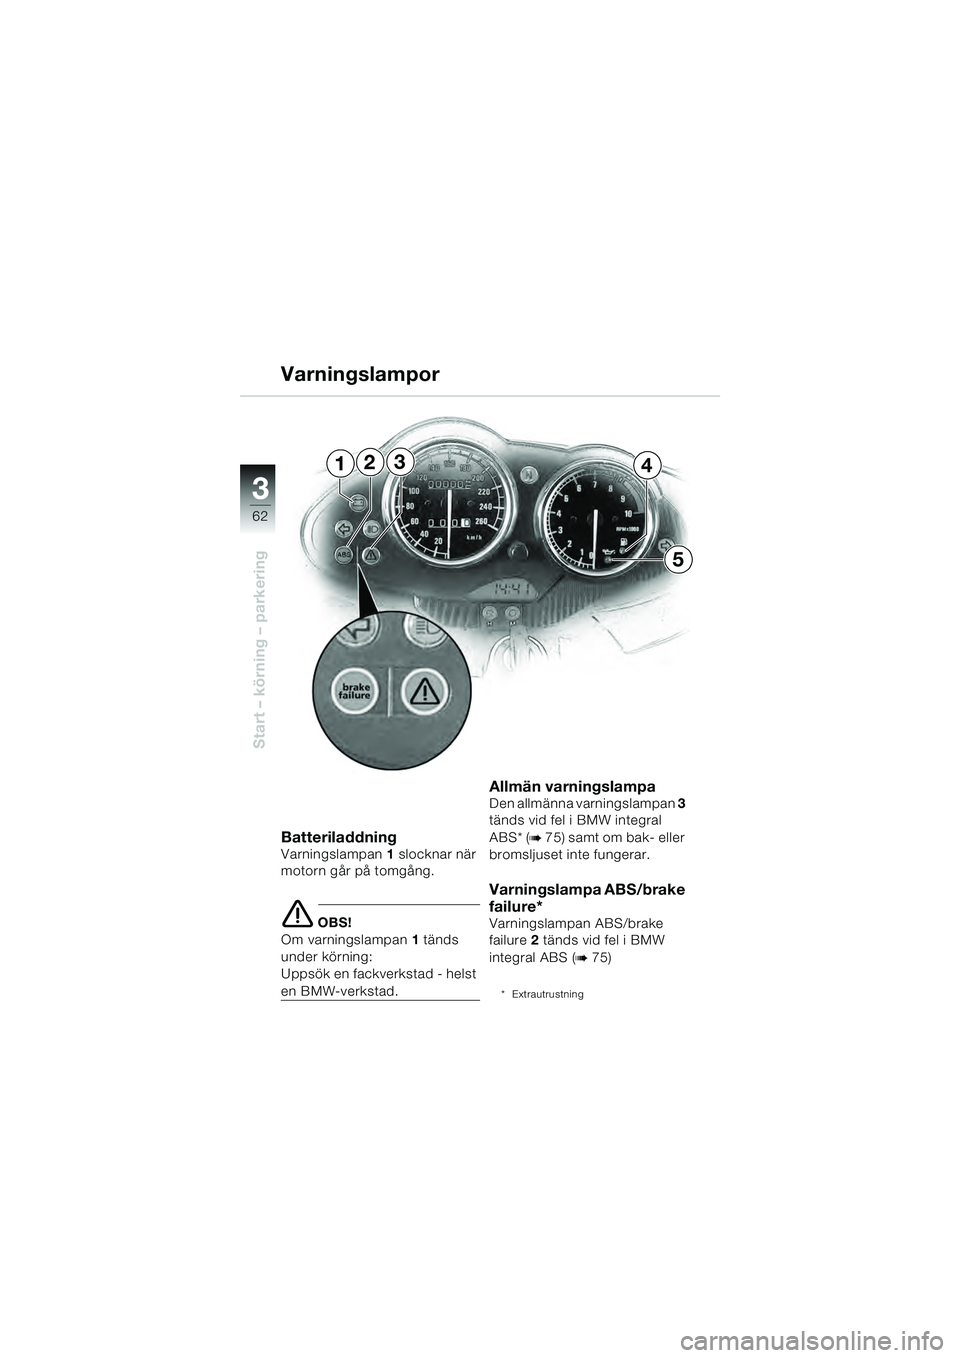 BMW MOTORRAD R 1100 S 2000  Instruktionsbok (in Swedish) 62
Start – körning – parkering
3
234
5
1
BatteriladdningVarningslampan1 slocknar när 
motorn går på tomgång.
e OBS!
Om varningslampan 1 tänds 
under körning: 
Uppsök en fackverkstad - hels